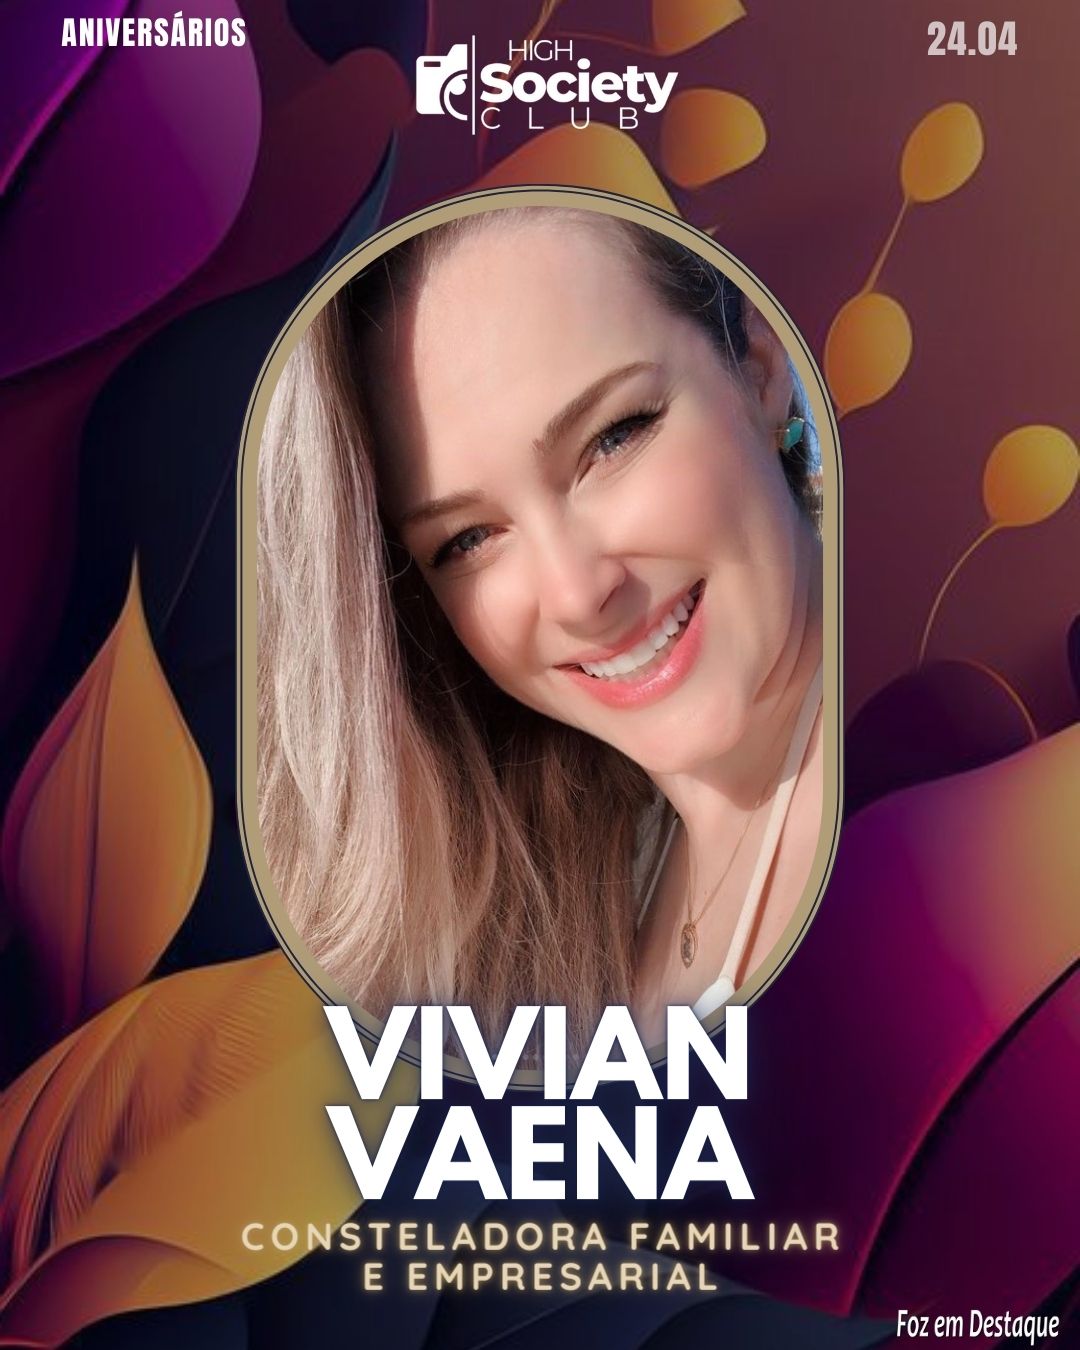 Vivian Vaena - Consteladora Familiar e Empresarial
 Aniversários 24 de Abril 2024 High Society Club Foz em Destaque